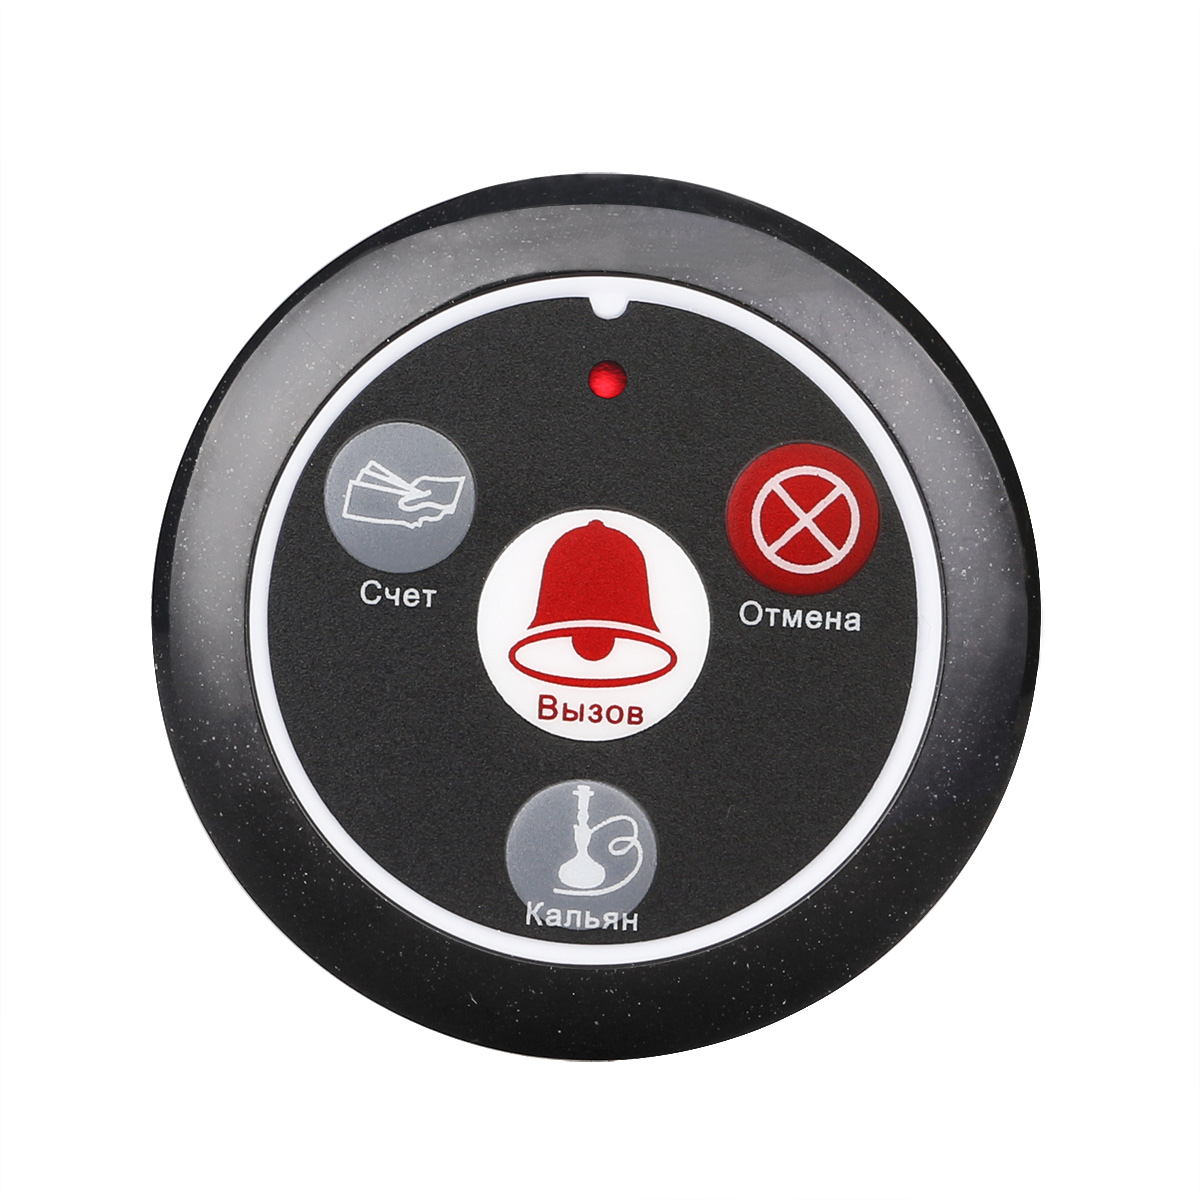 Кнопка вызова персонала Retekess R22117H для клиентов ресторана, кафе, фастфуда кнопка вызова персонала универсальная retekess r22002 с защитой ipx3 и индикацией